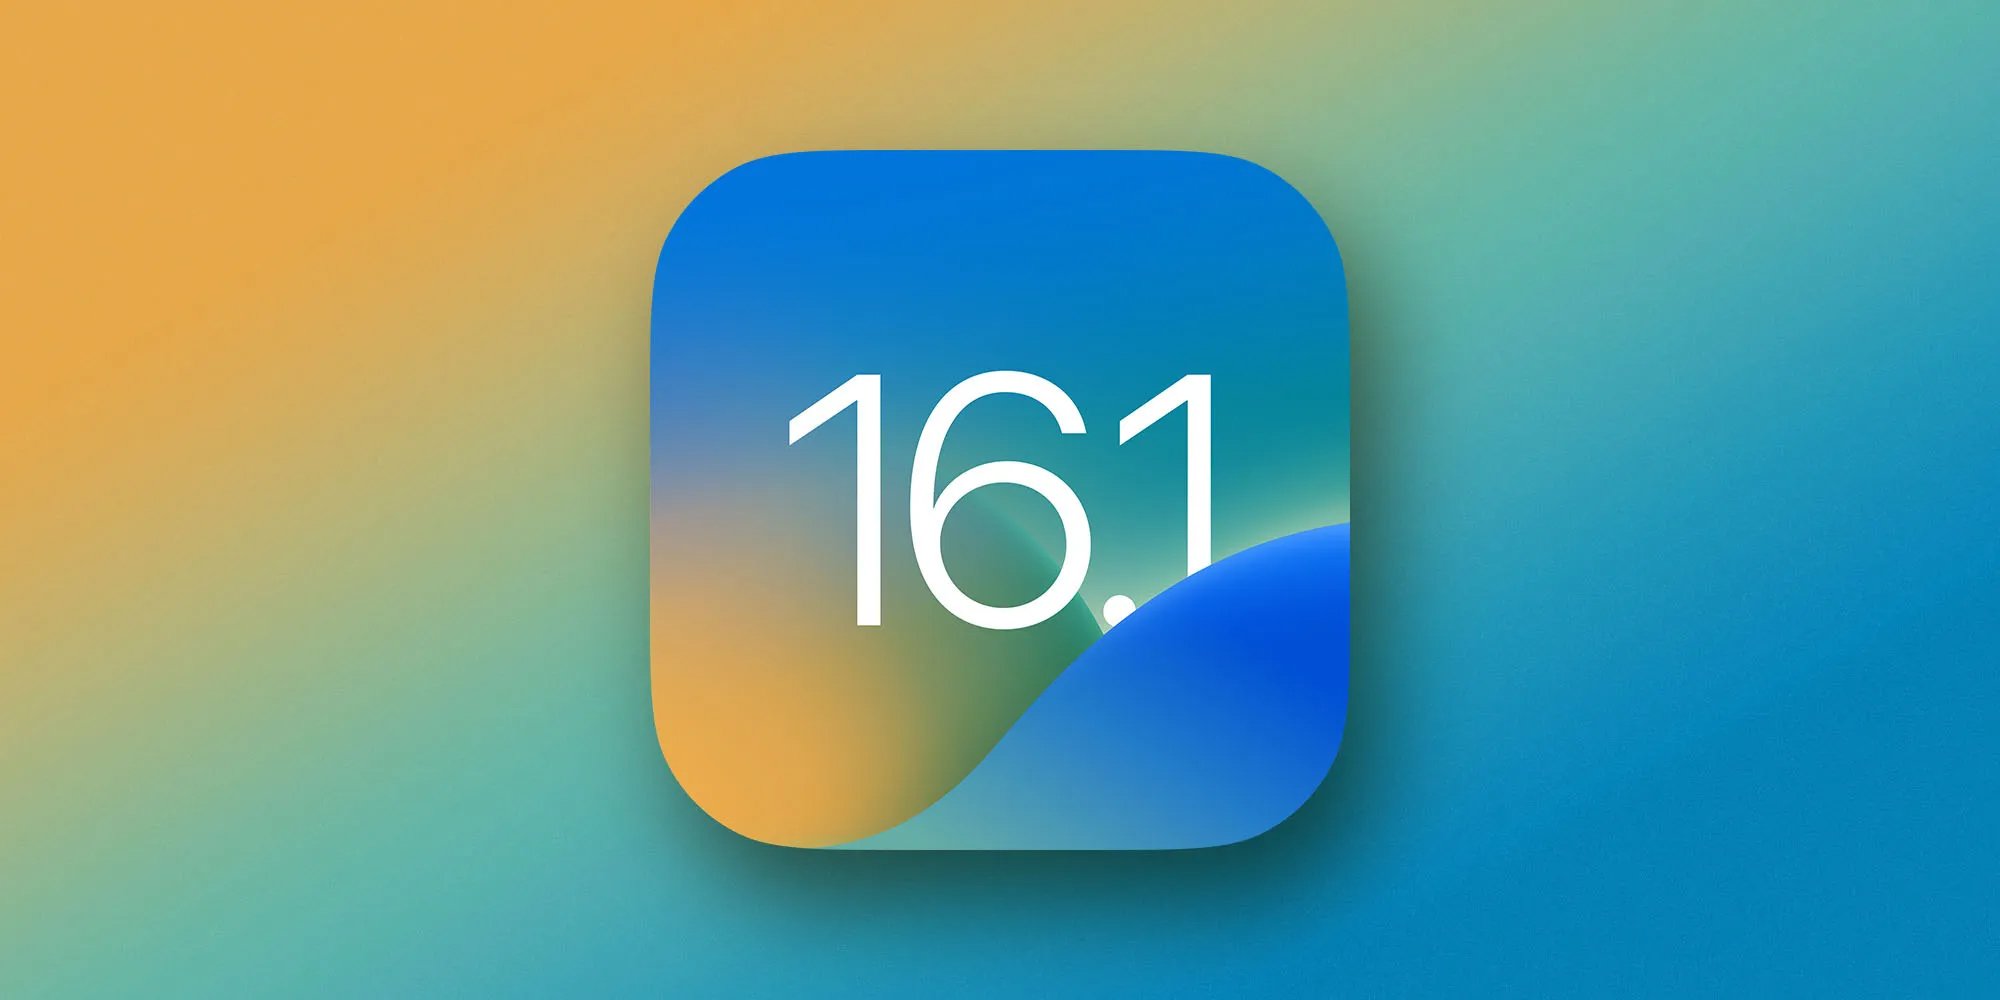 Apple has released iOS 16.1, iPadOS 16.1 and macOS Ventura